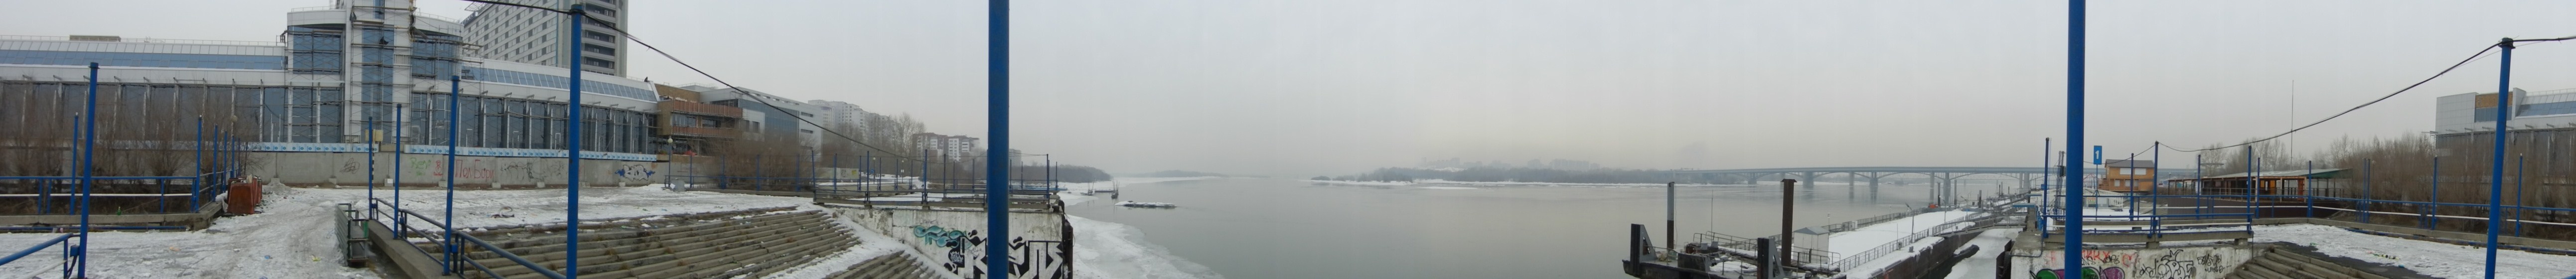 Река Обь, Новосибирск